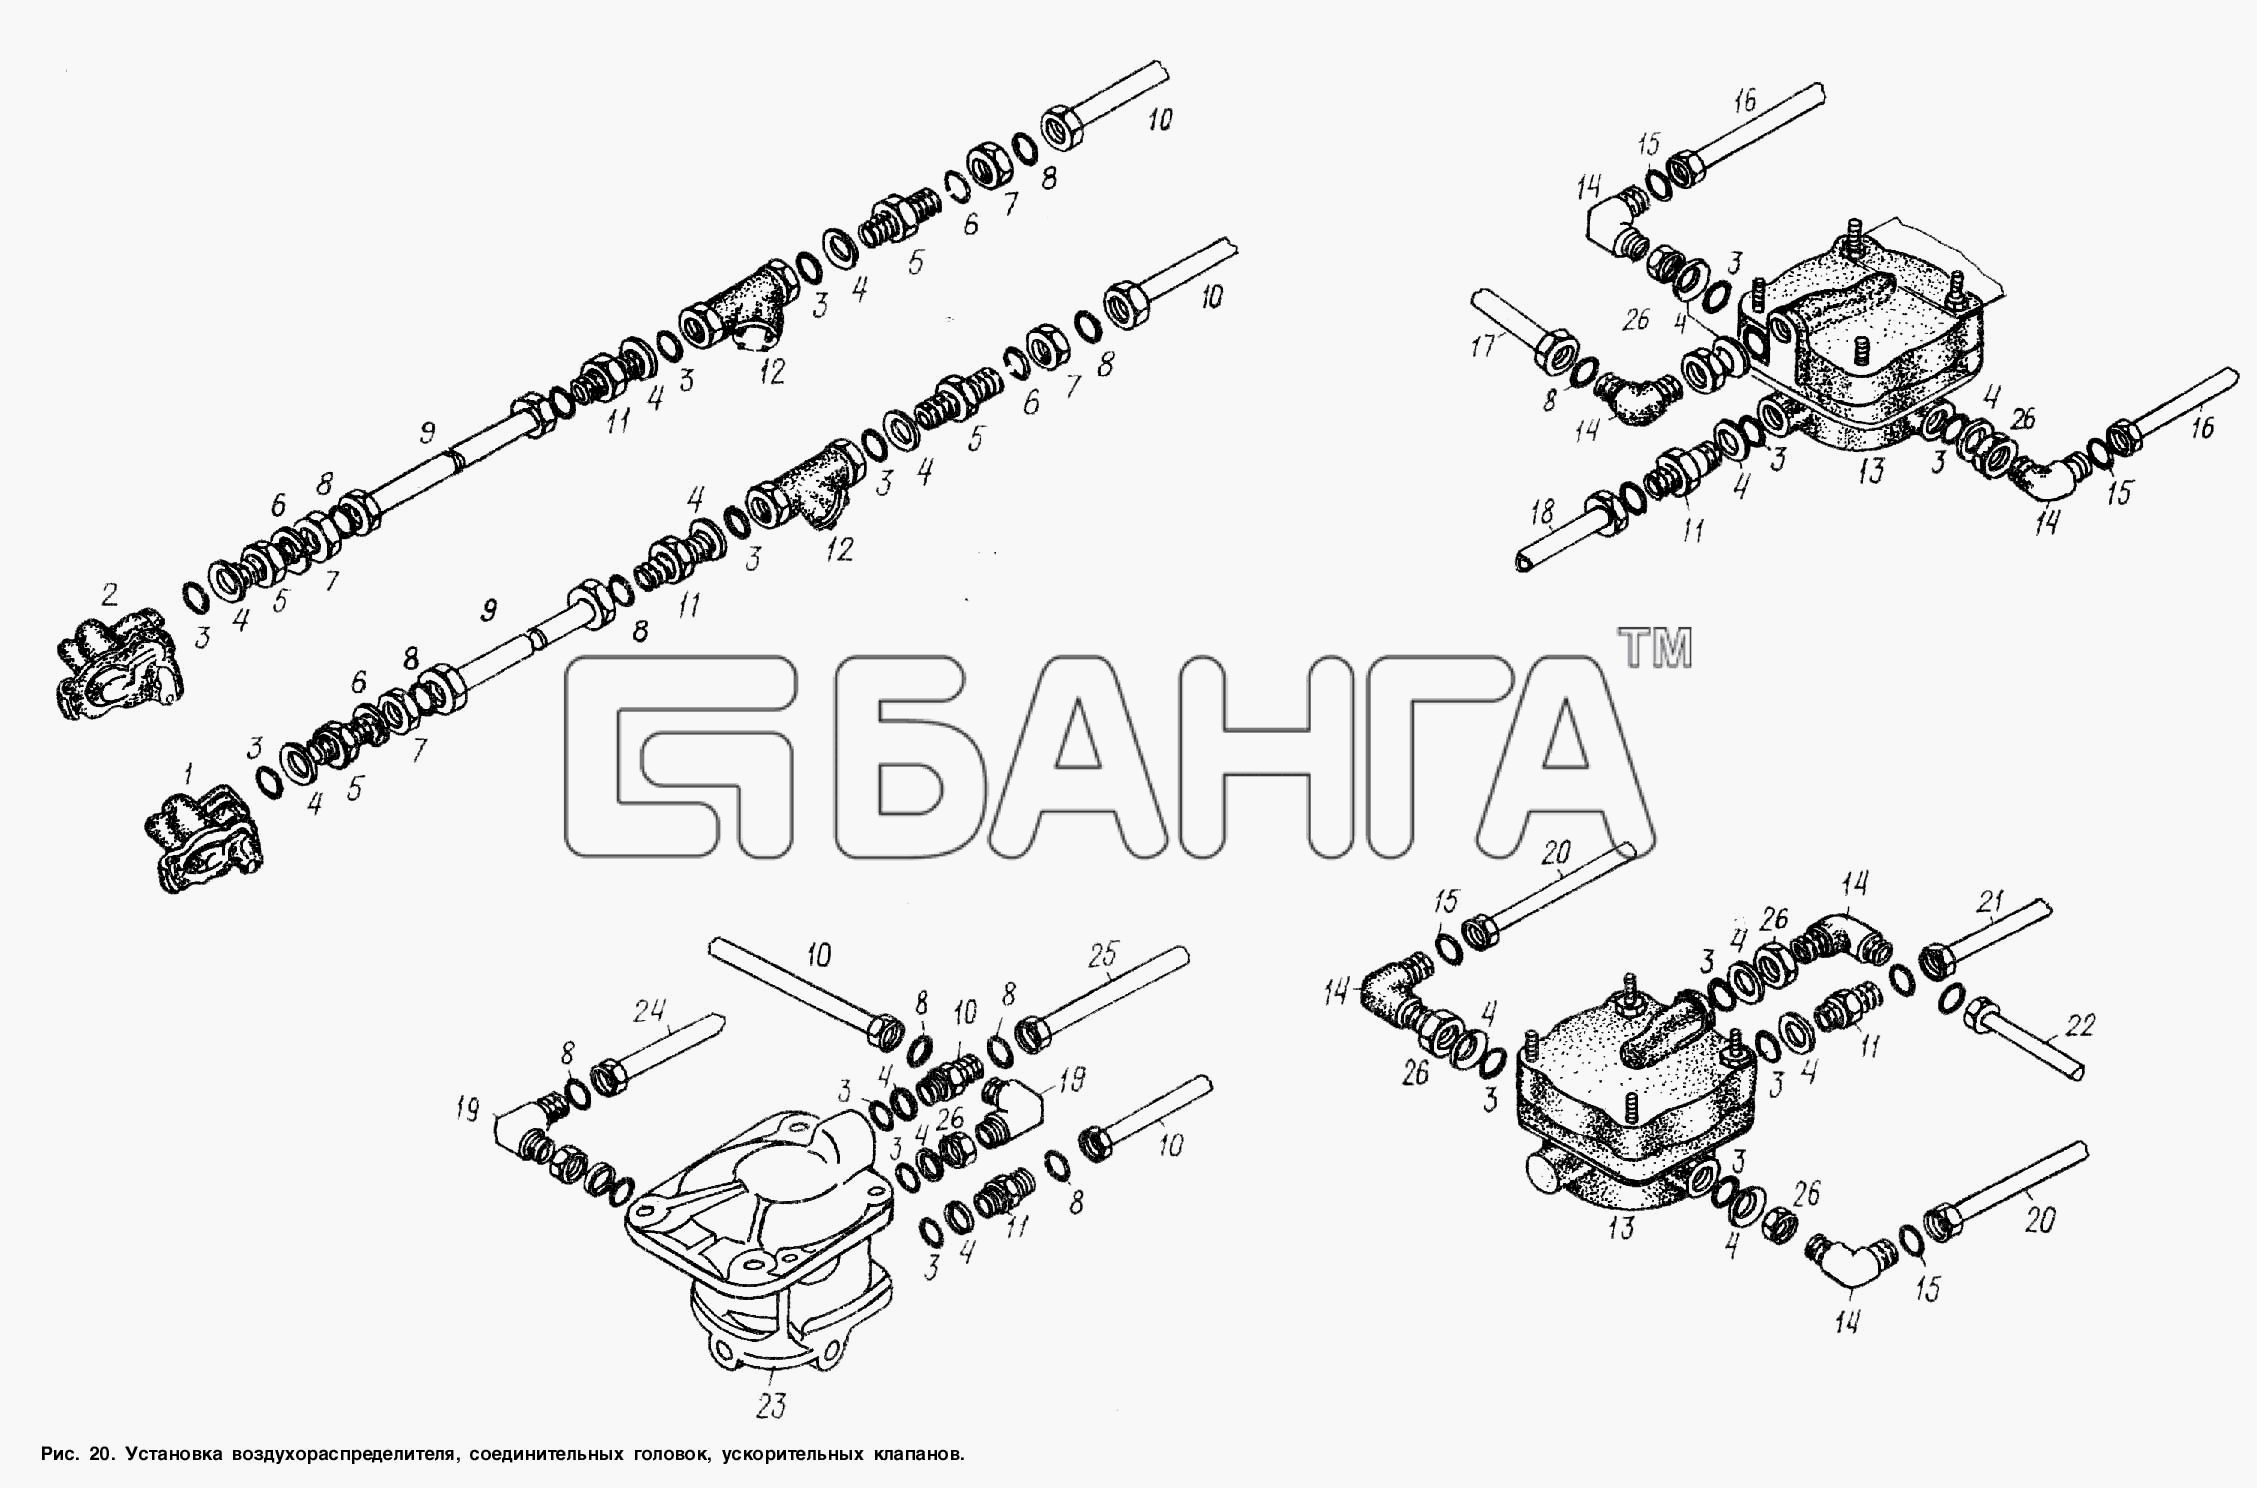 МАЗ МАЗ-93802 Схема Установка воздухораспределителя banga.ua